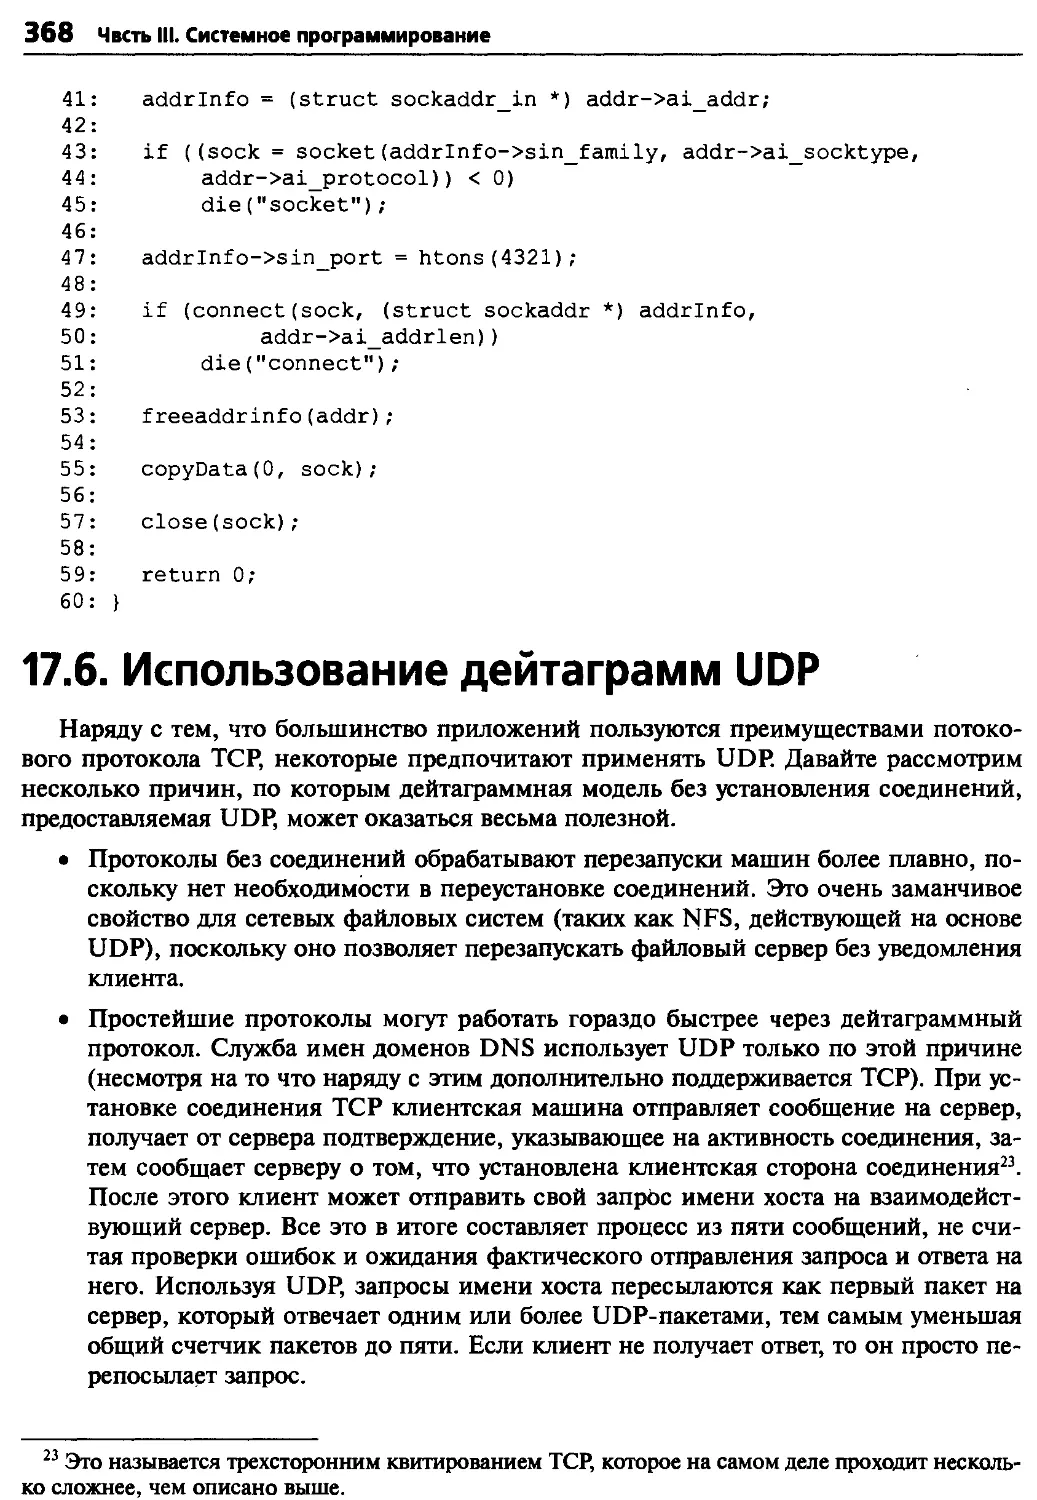 17.6. Использование дейтаграмм UDP